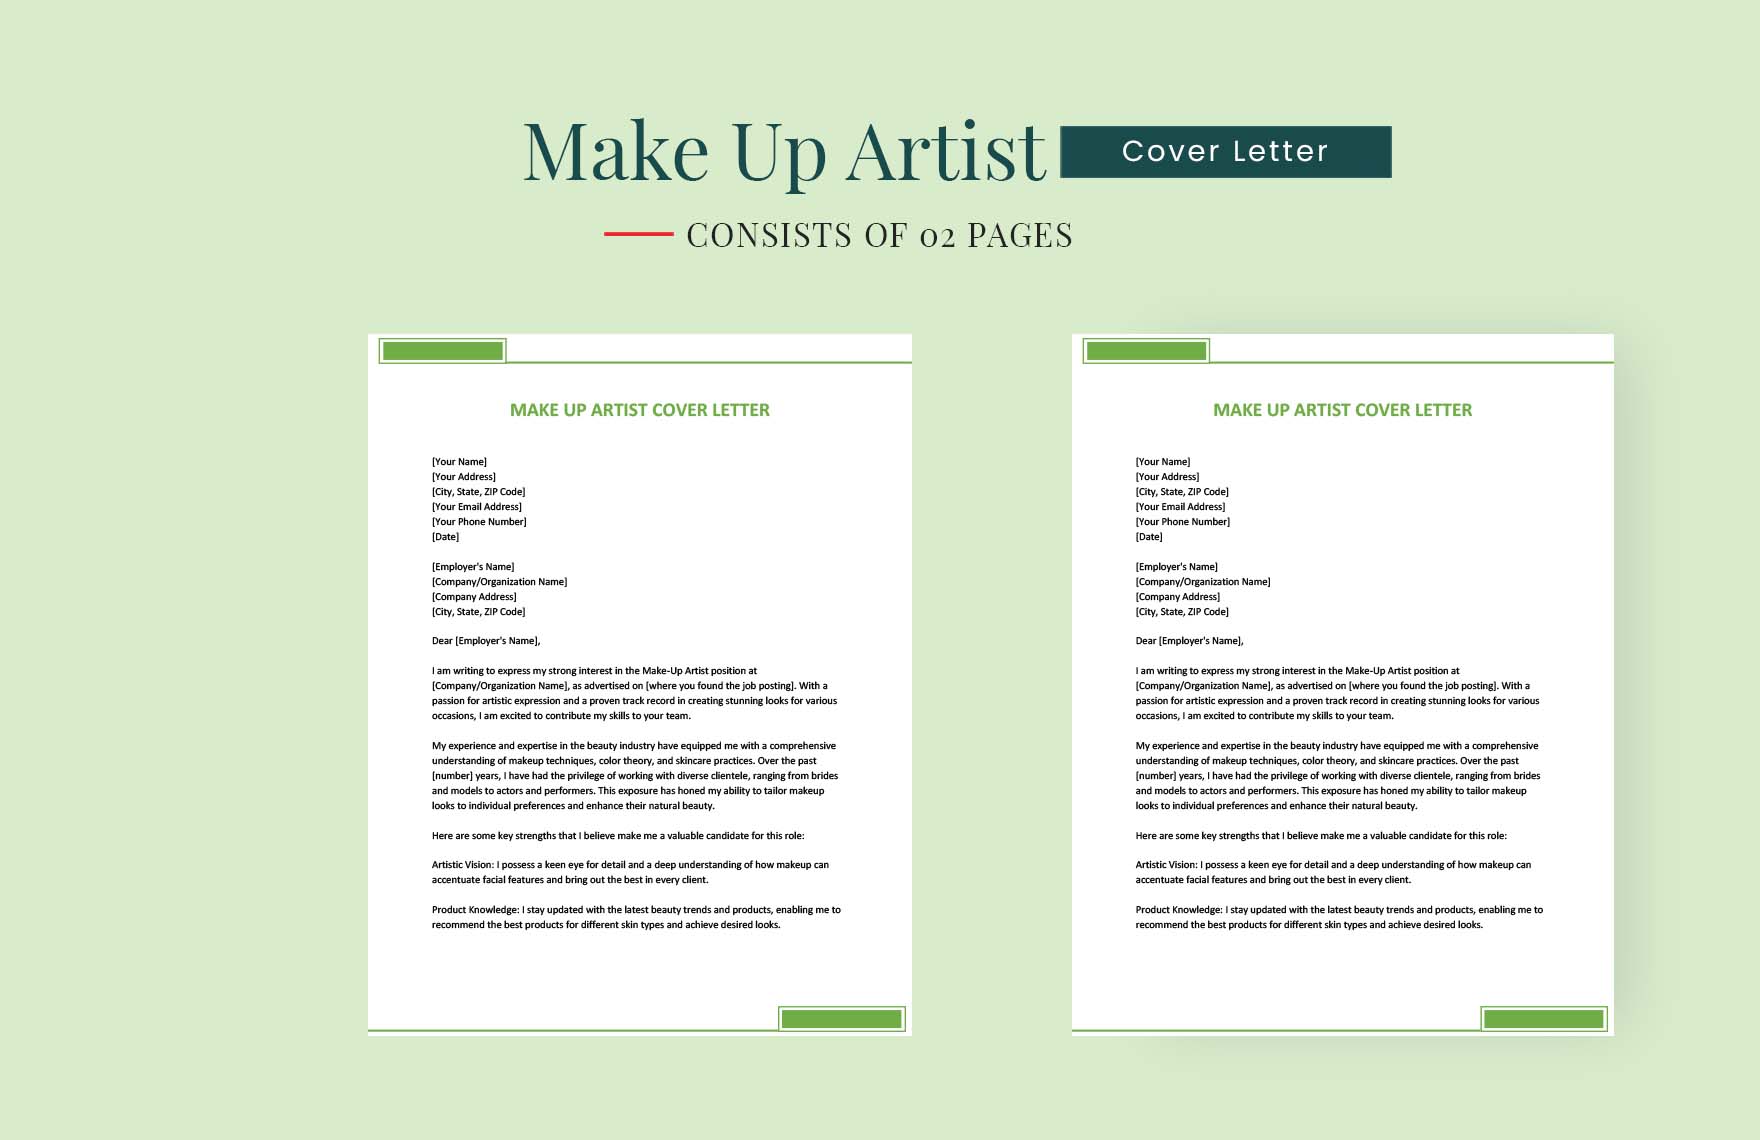 Make Up Artist Cover Letter